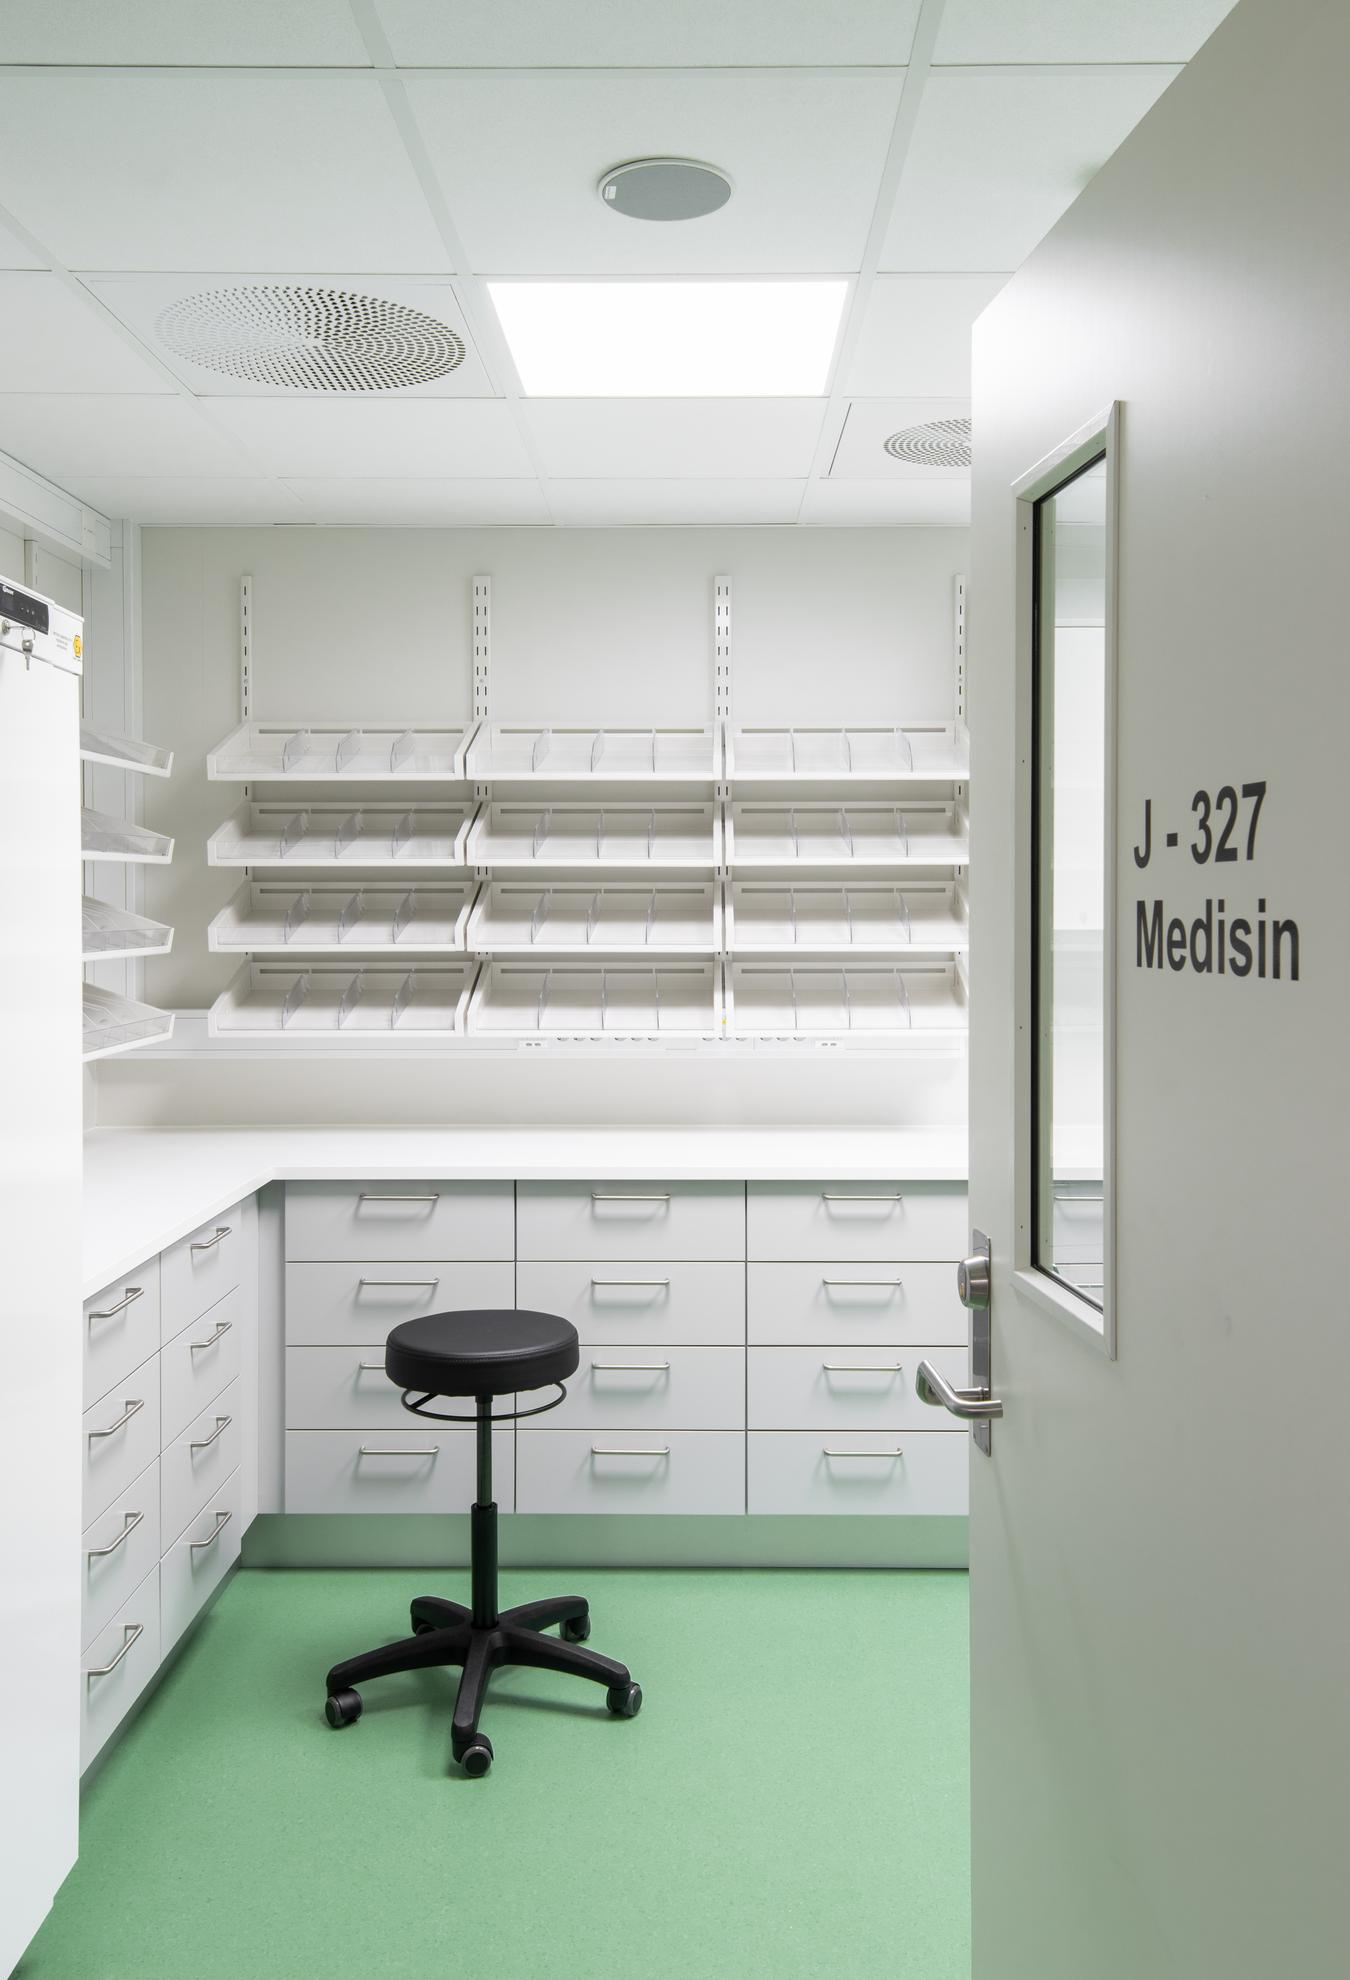 Medicinrum med grønt gulv. Foto